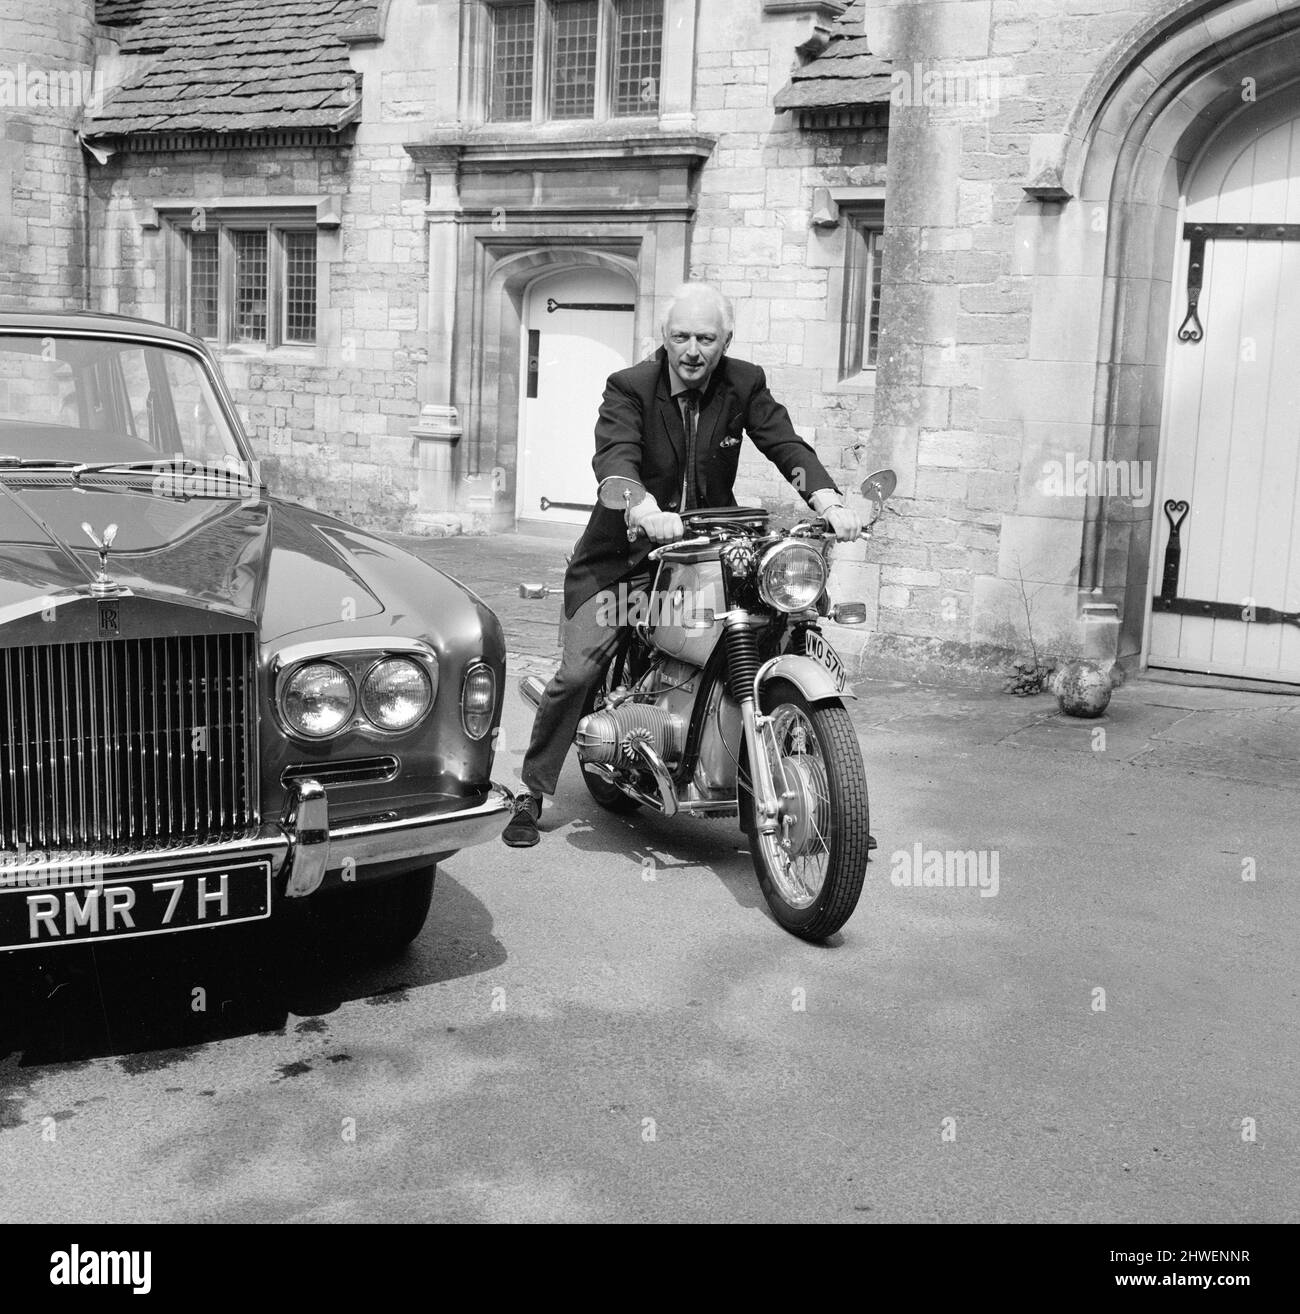 Dr. Alexander Eric Moulton CBE (nato il 9 aprile 1920), noto anche come  Alex Moulton, ingegnere e inventore inglese, specializzato nella  progettazione delle sospensioni. In foto seduto su una moto BMW, accanto